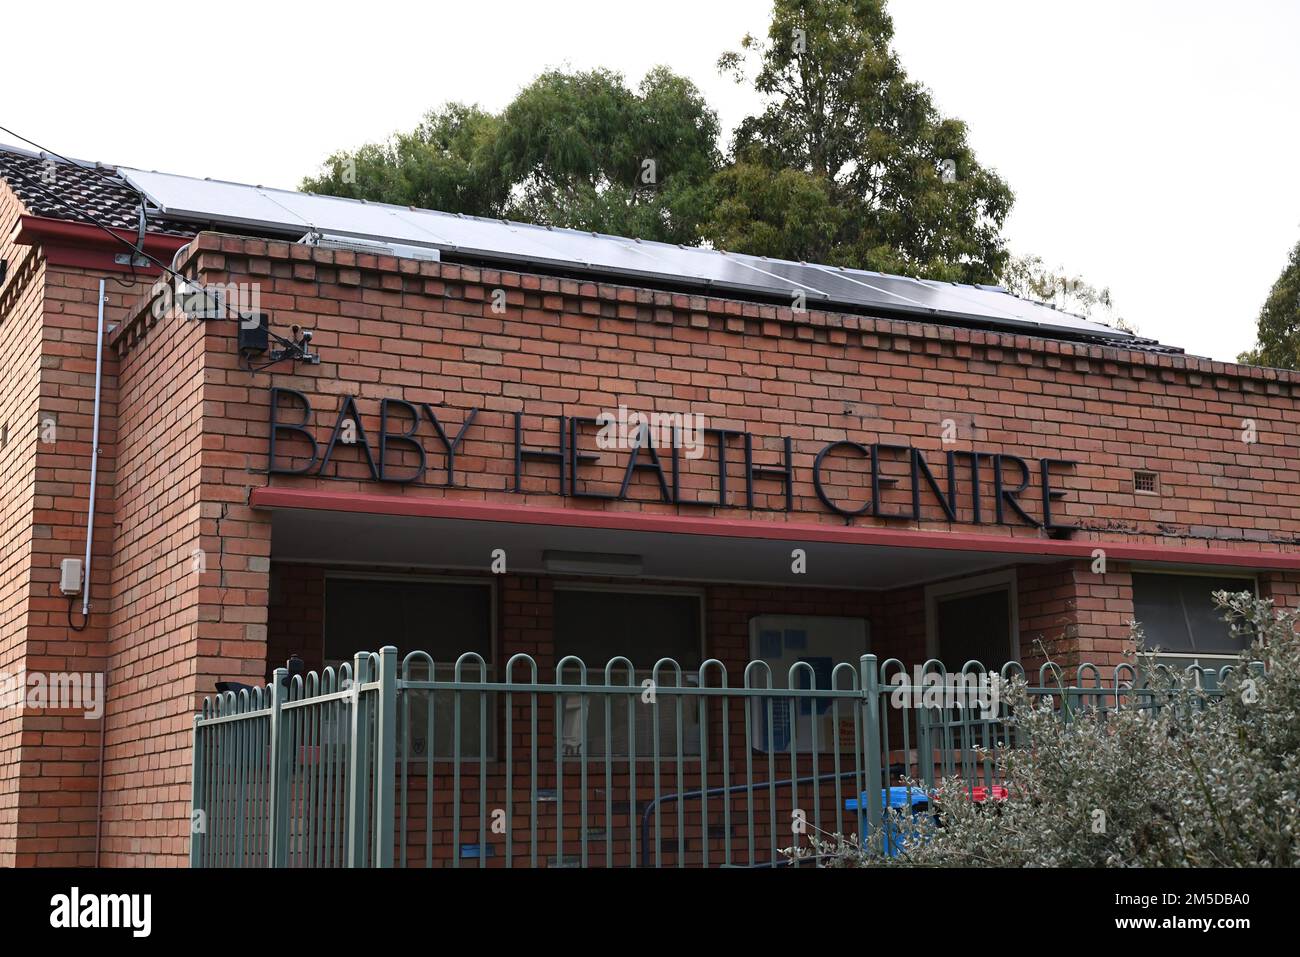 Extérieur du Centre de santé pour bébés, qui offre des services de santé maternelle, infantile et familiale, situé sur Palmer Ave Banque D'Images